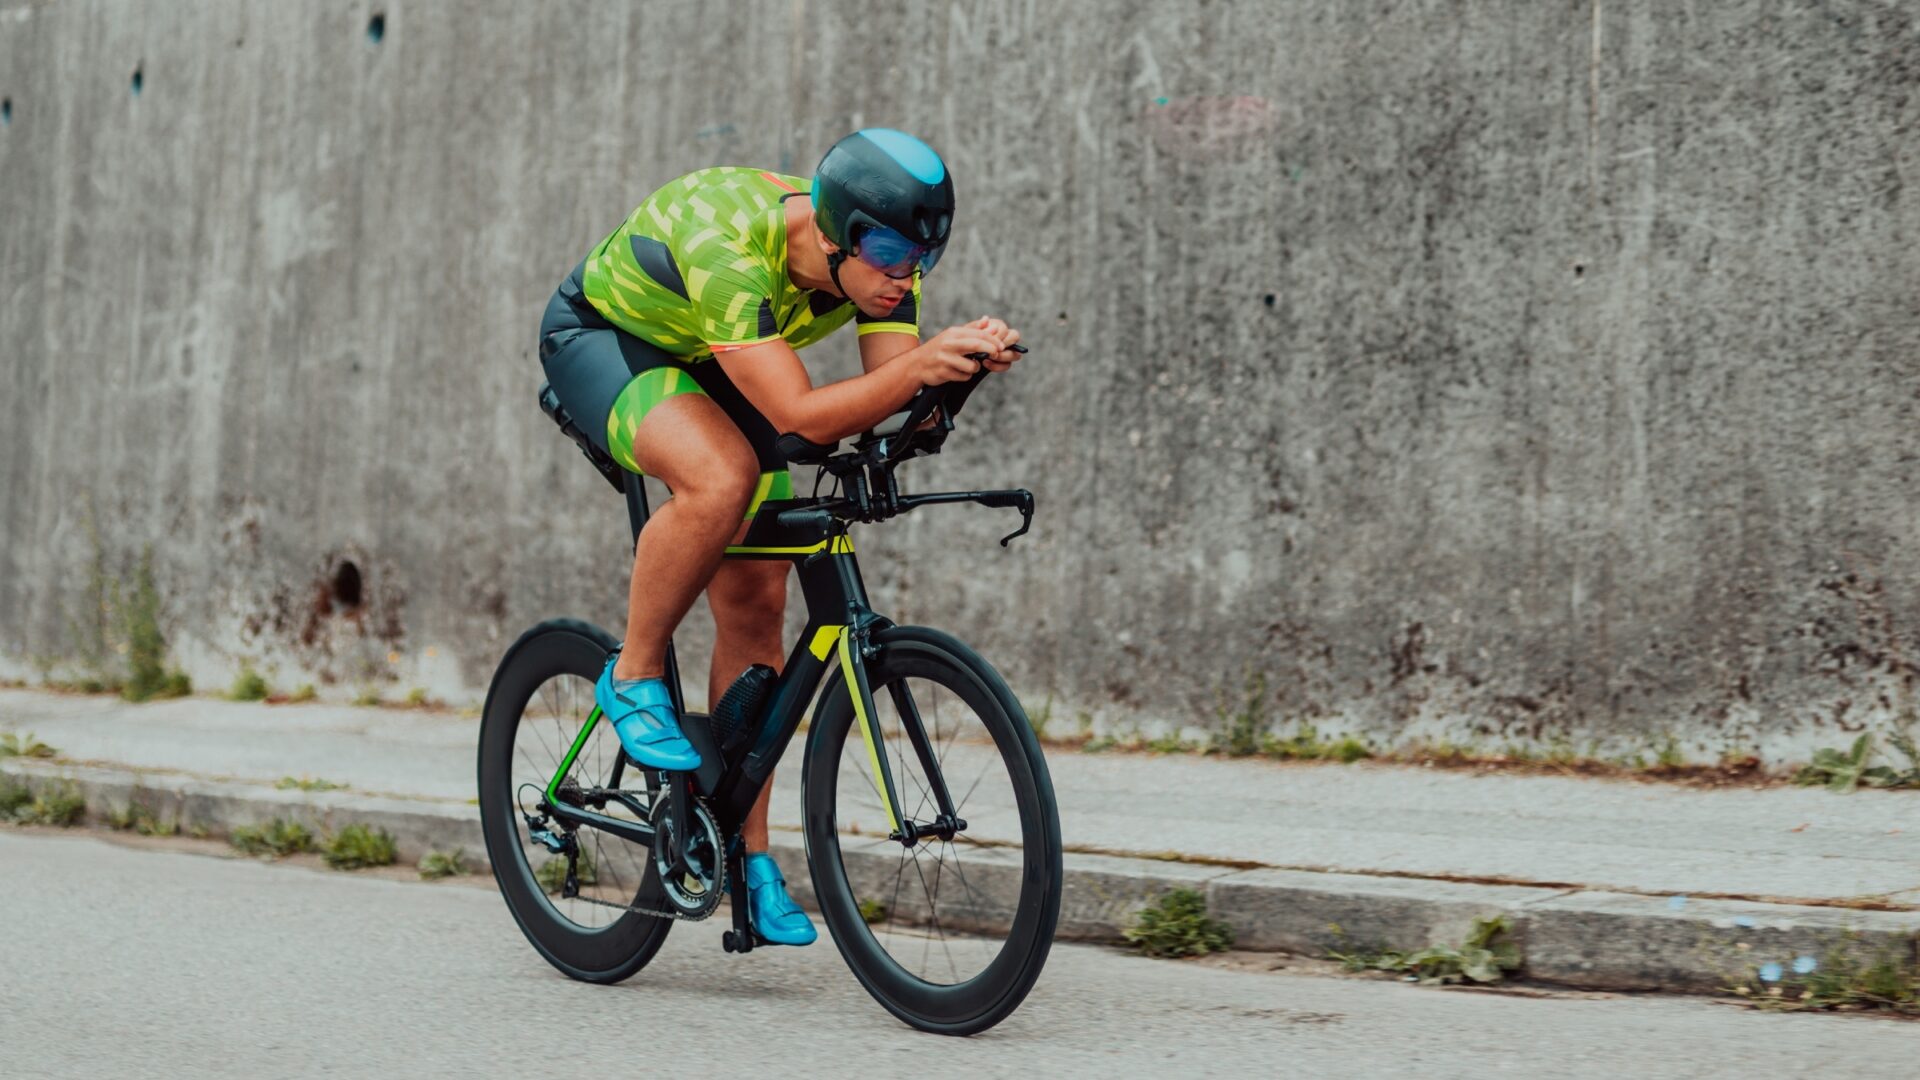 A triathlete rides past a concrete wall